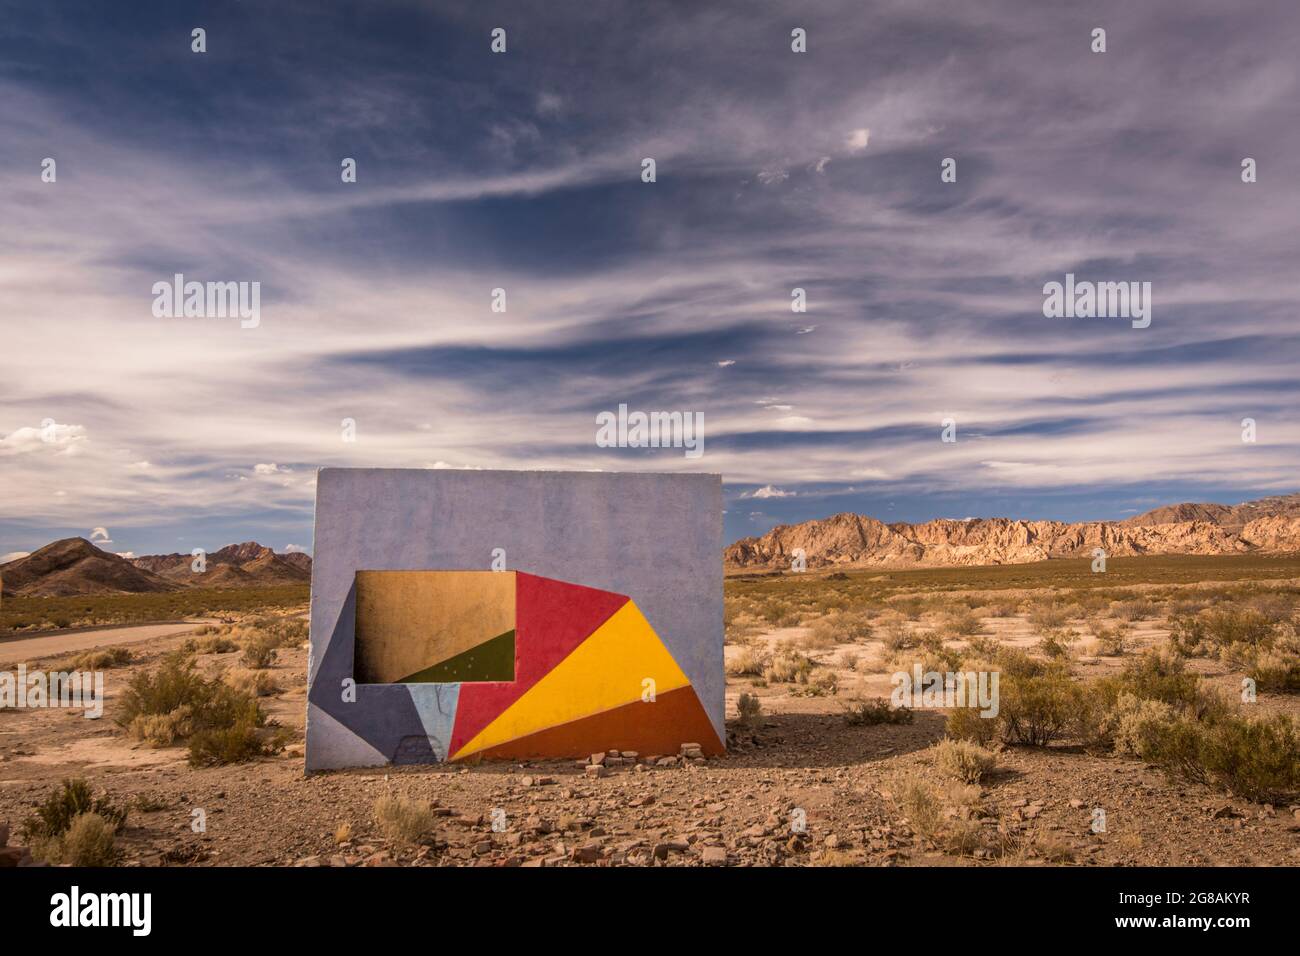 Isolierter Raum mit einer mit Farben bemalten Wand in einer einsamen desertischen Landschaft Stockfoto